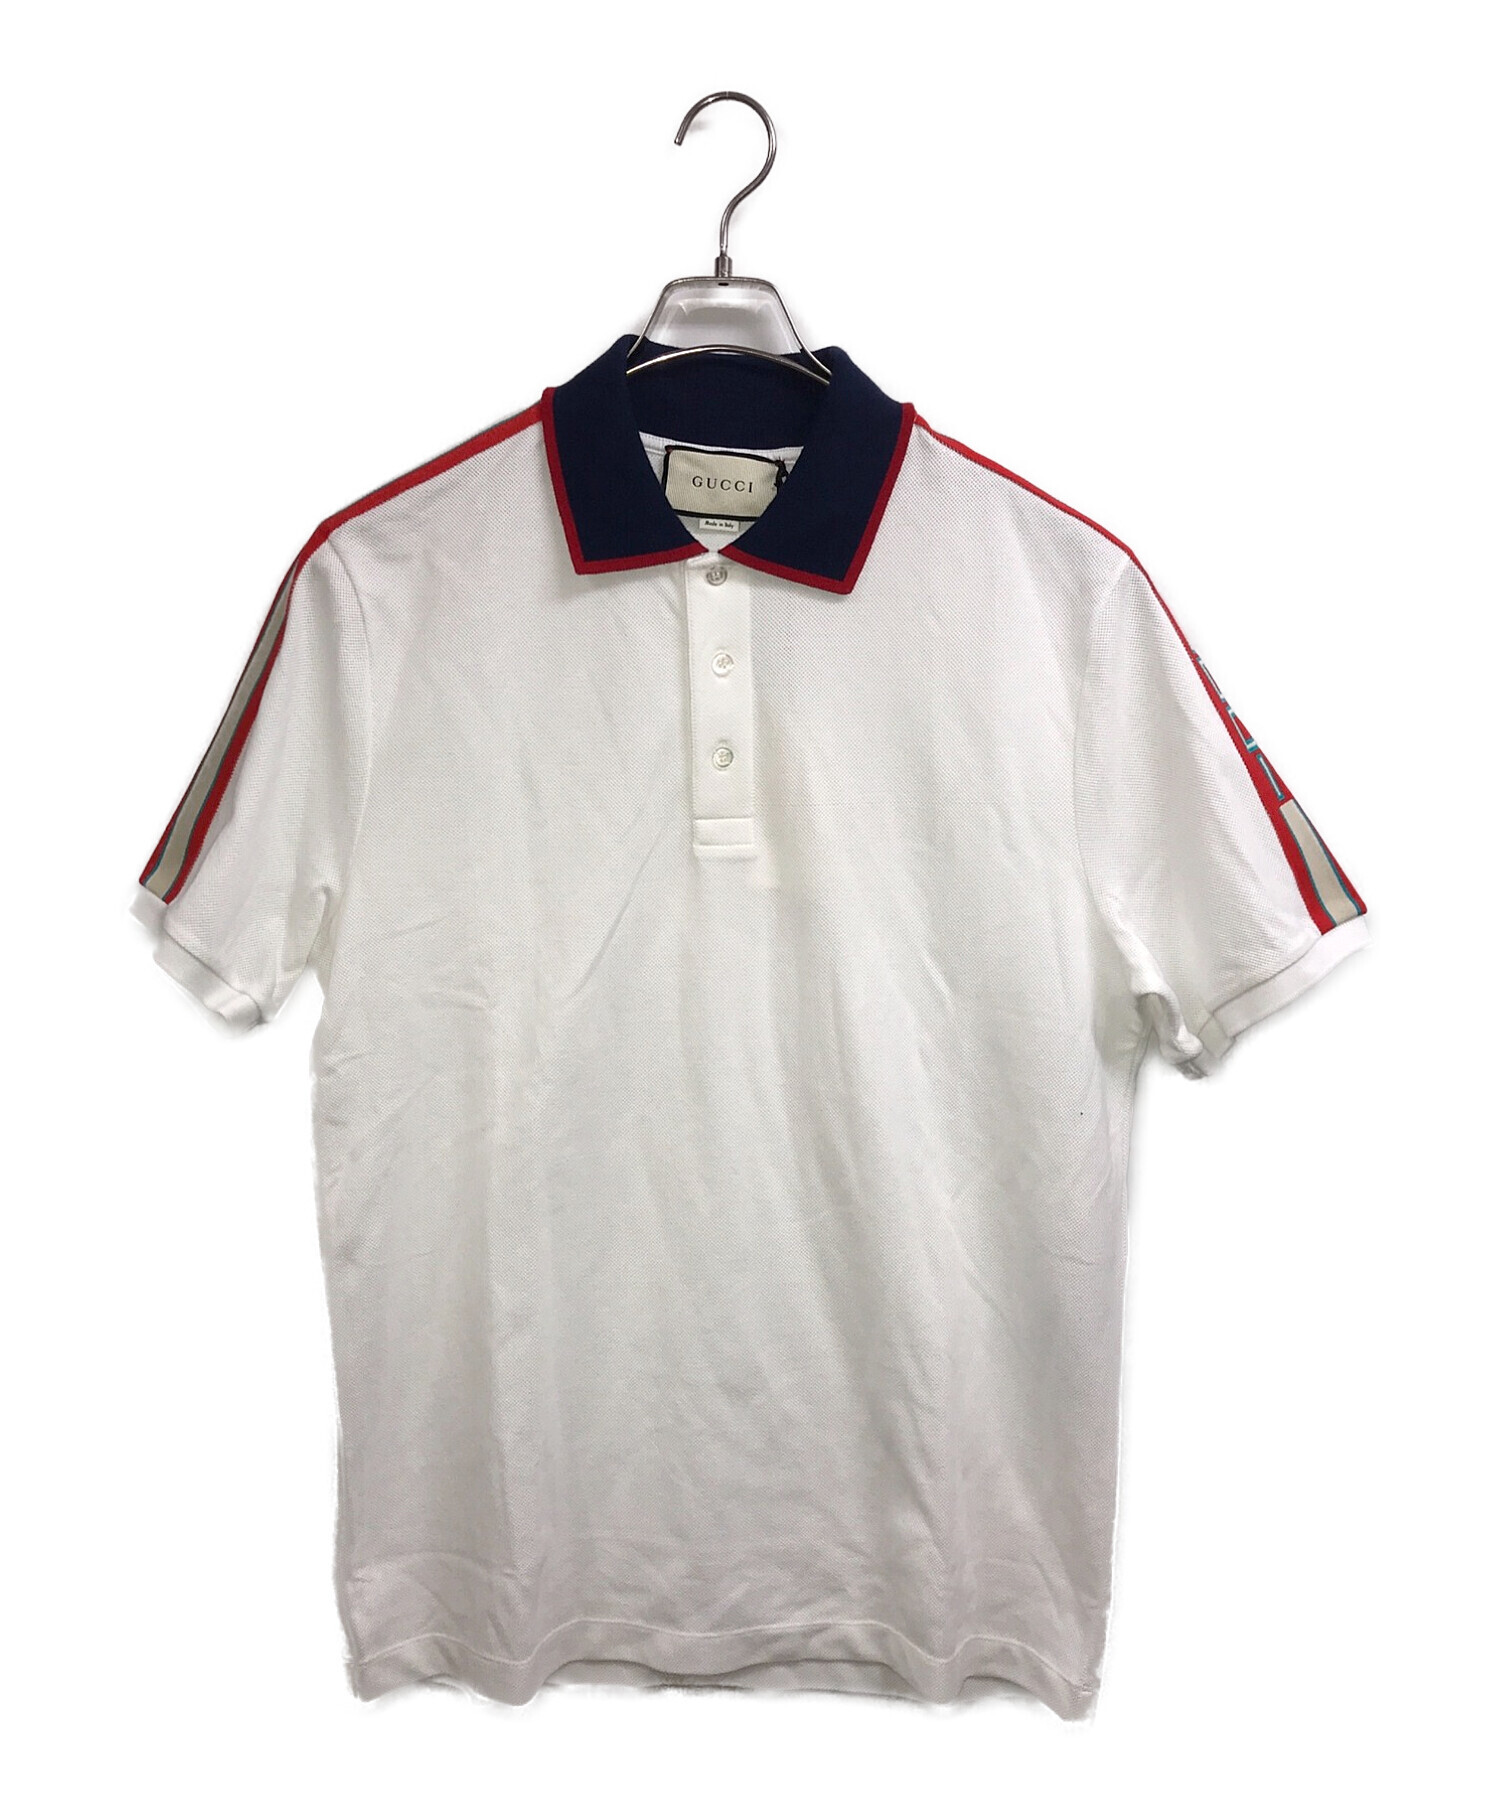 GUCCI (グッチ) 18SS ストライプポロシャツ ホワイト サイズ:XXL 未使用品